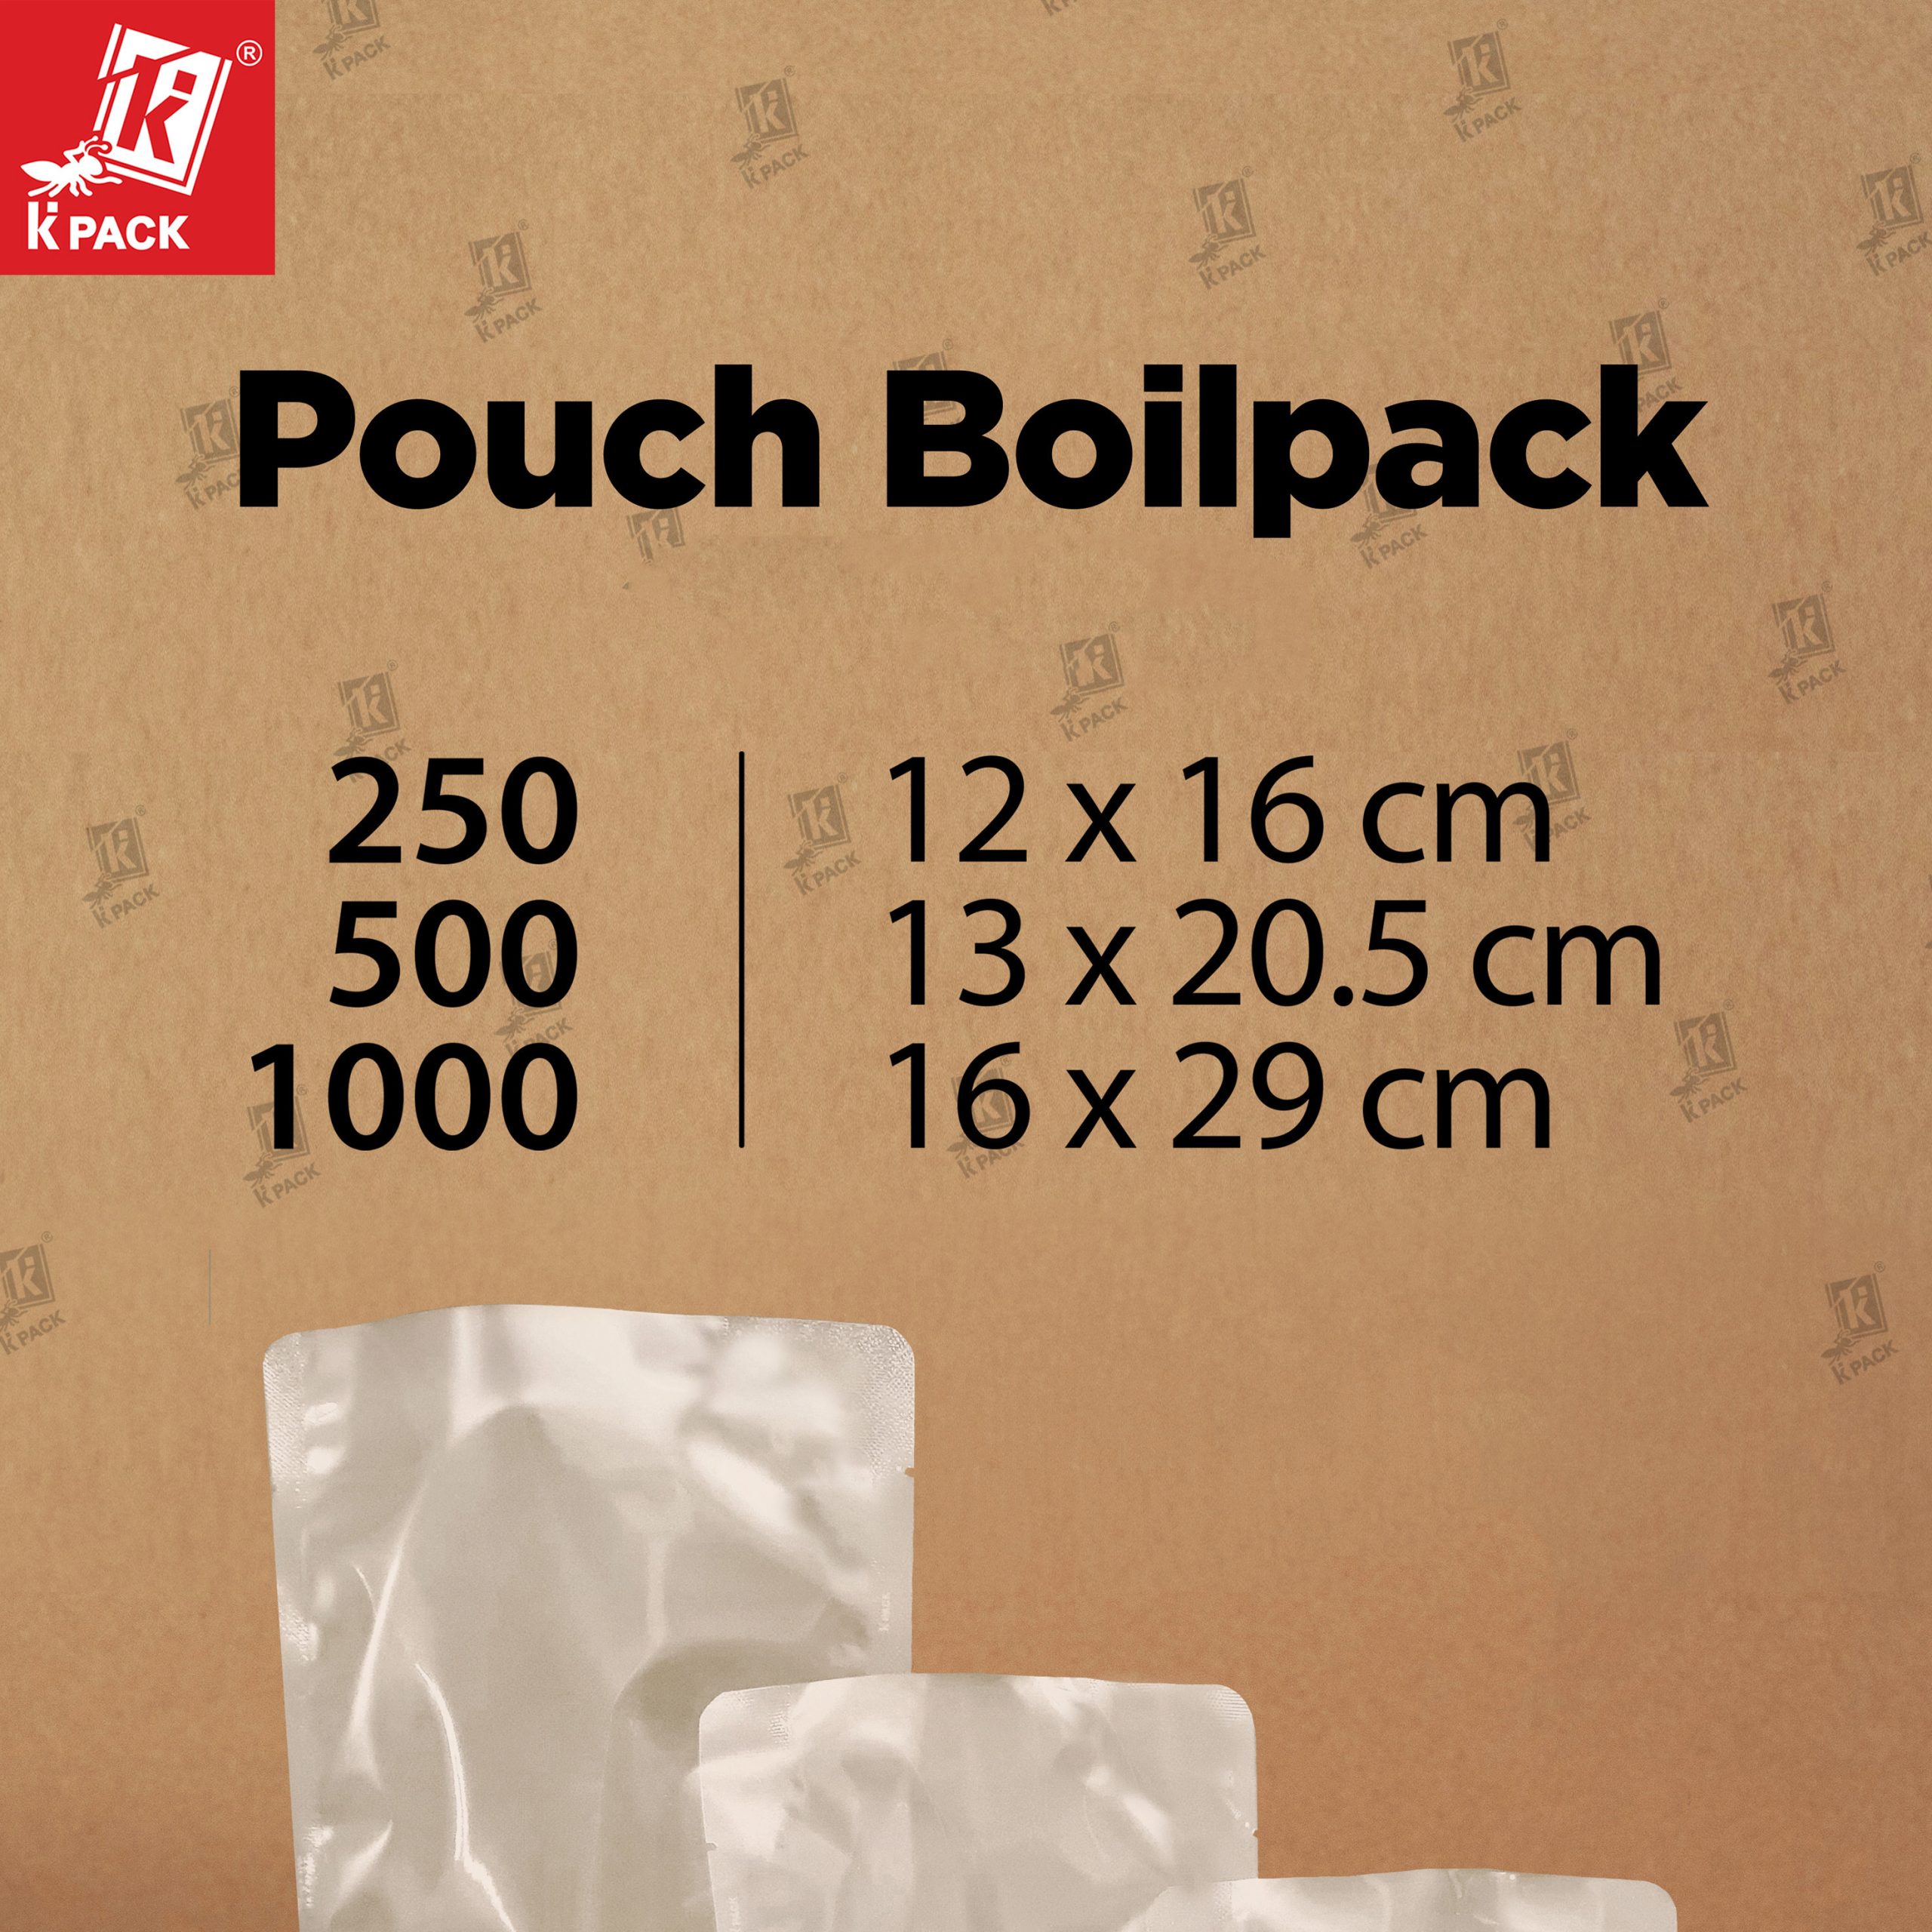 Pouch Boilpack ukuran 1.1